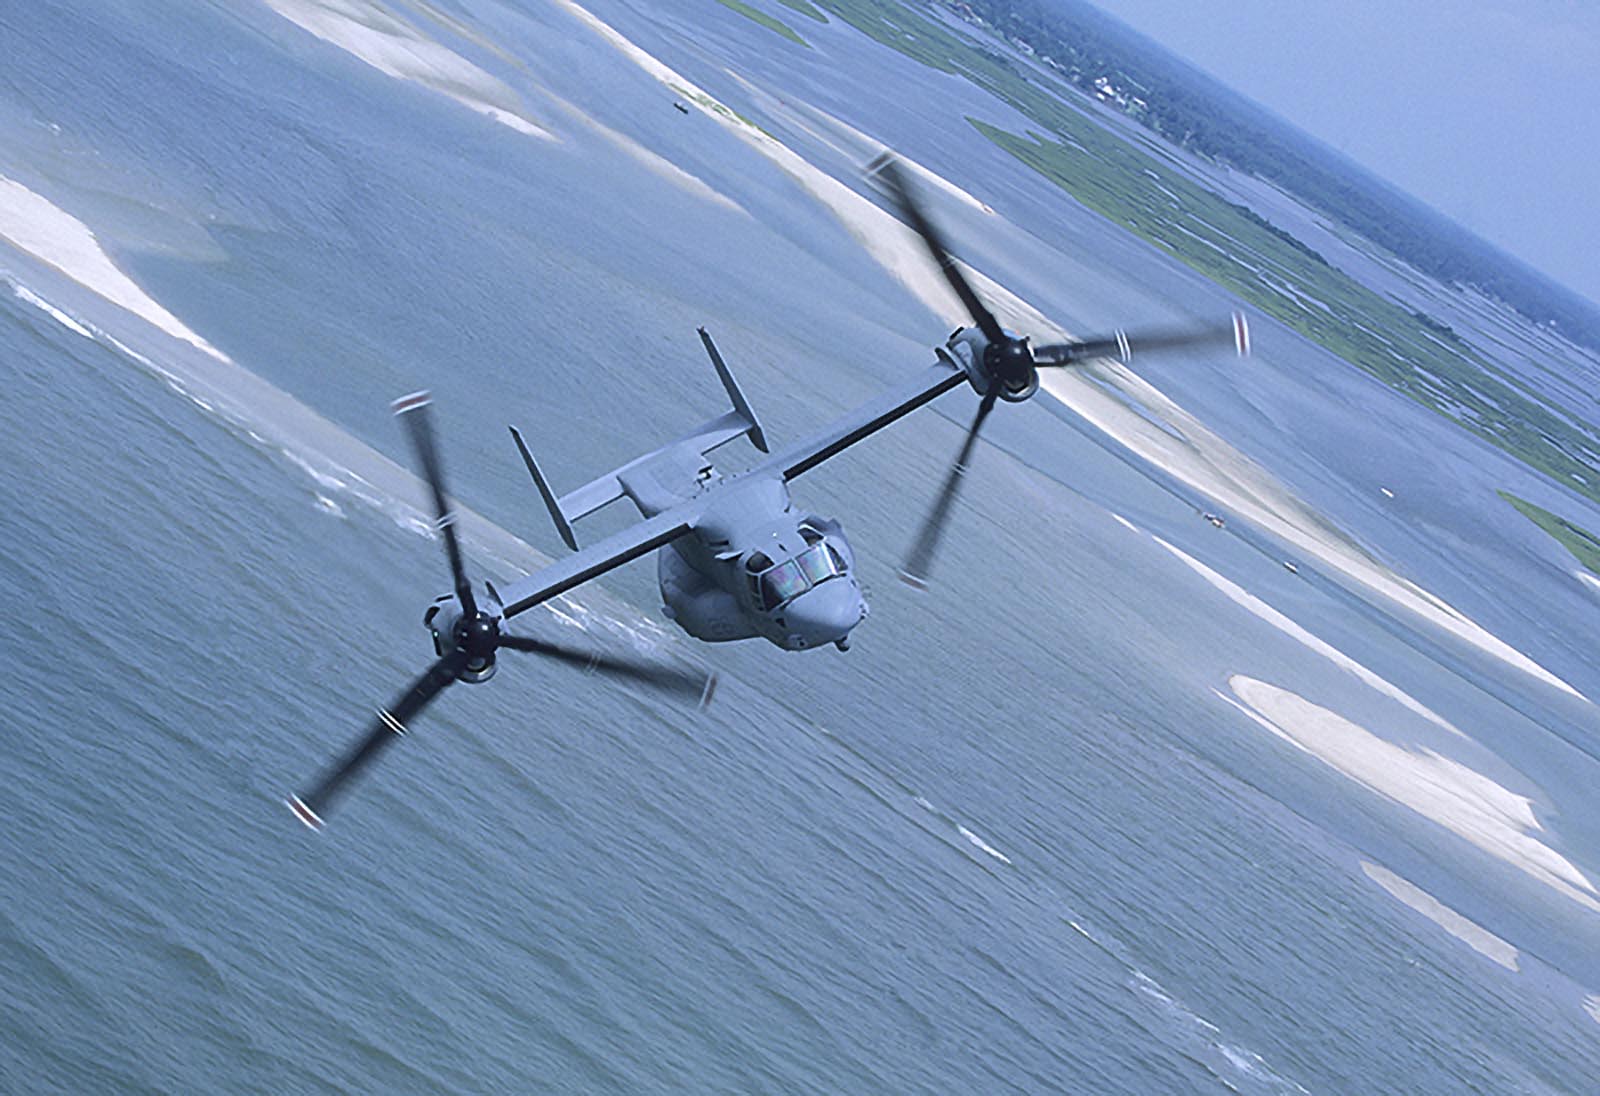 CV-22 Osprey flying near DTS Airport